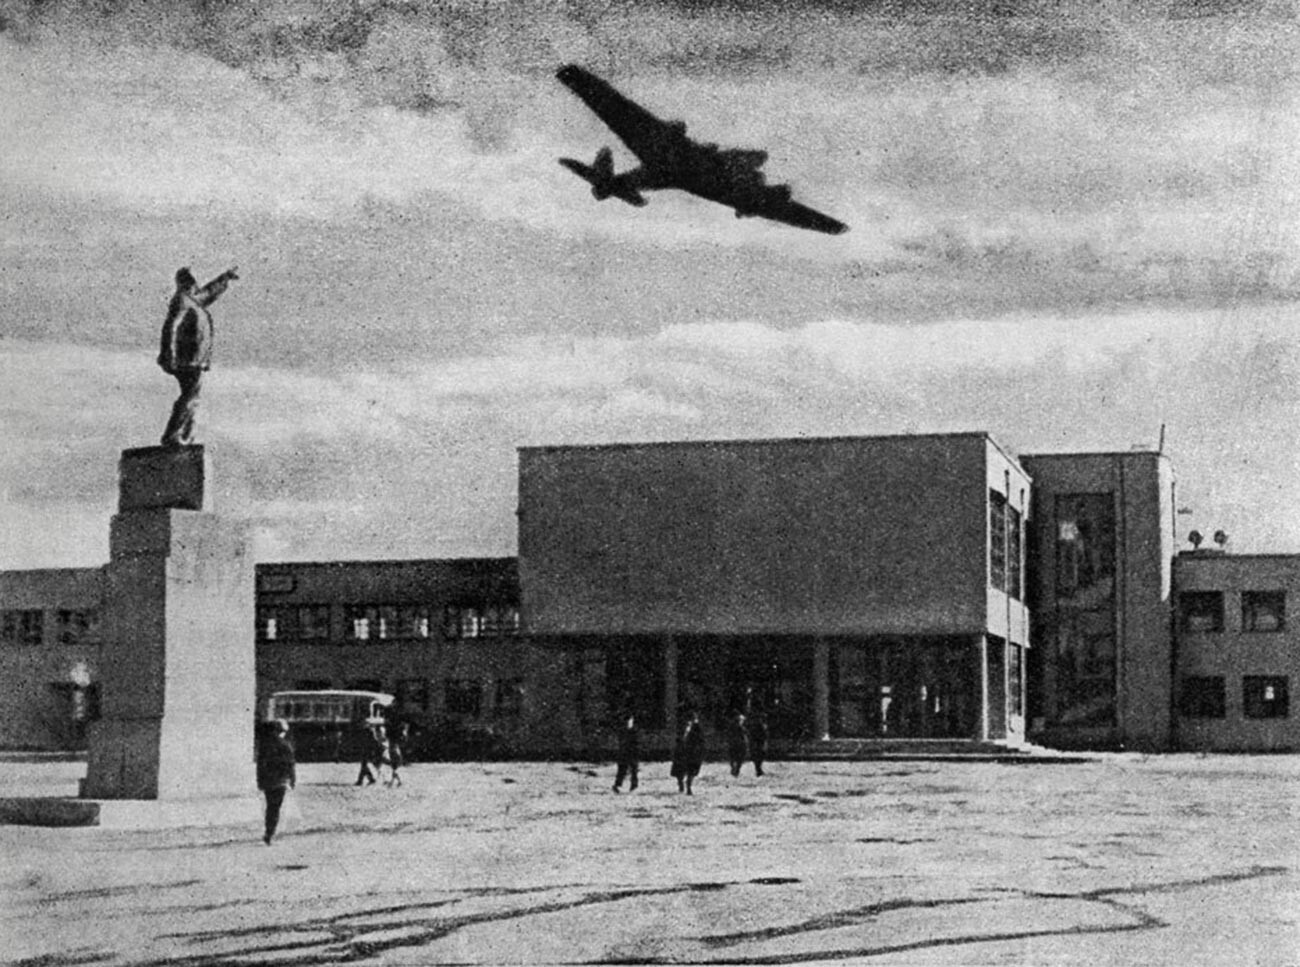 ANT-14 en el aeropuerto de Jodinskoe Pole, 1934.